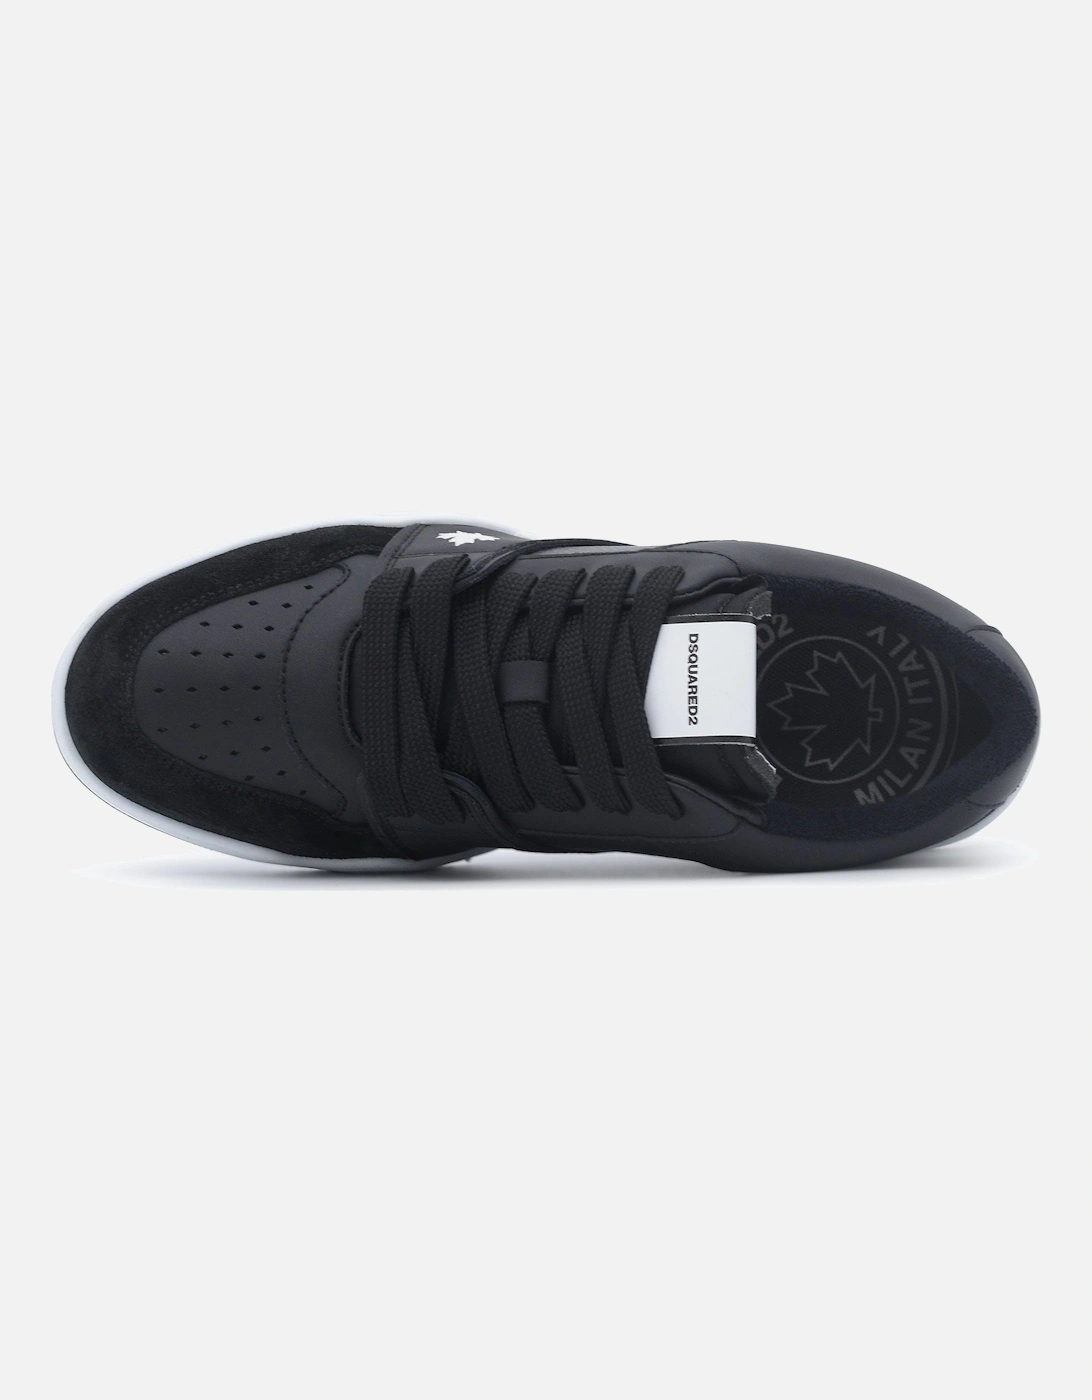 Spike Sneakers Black